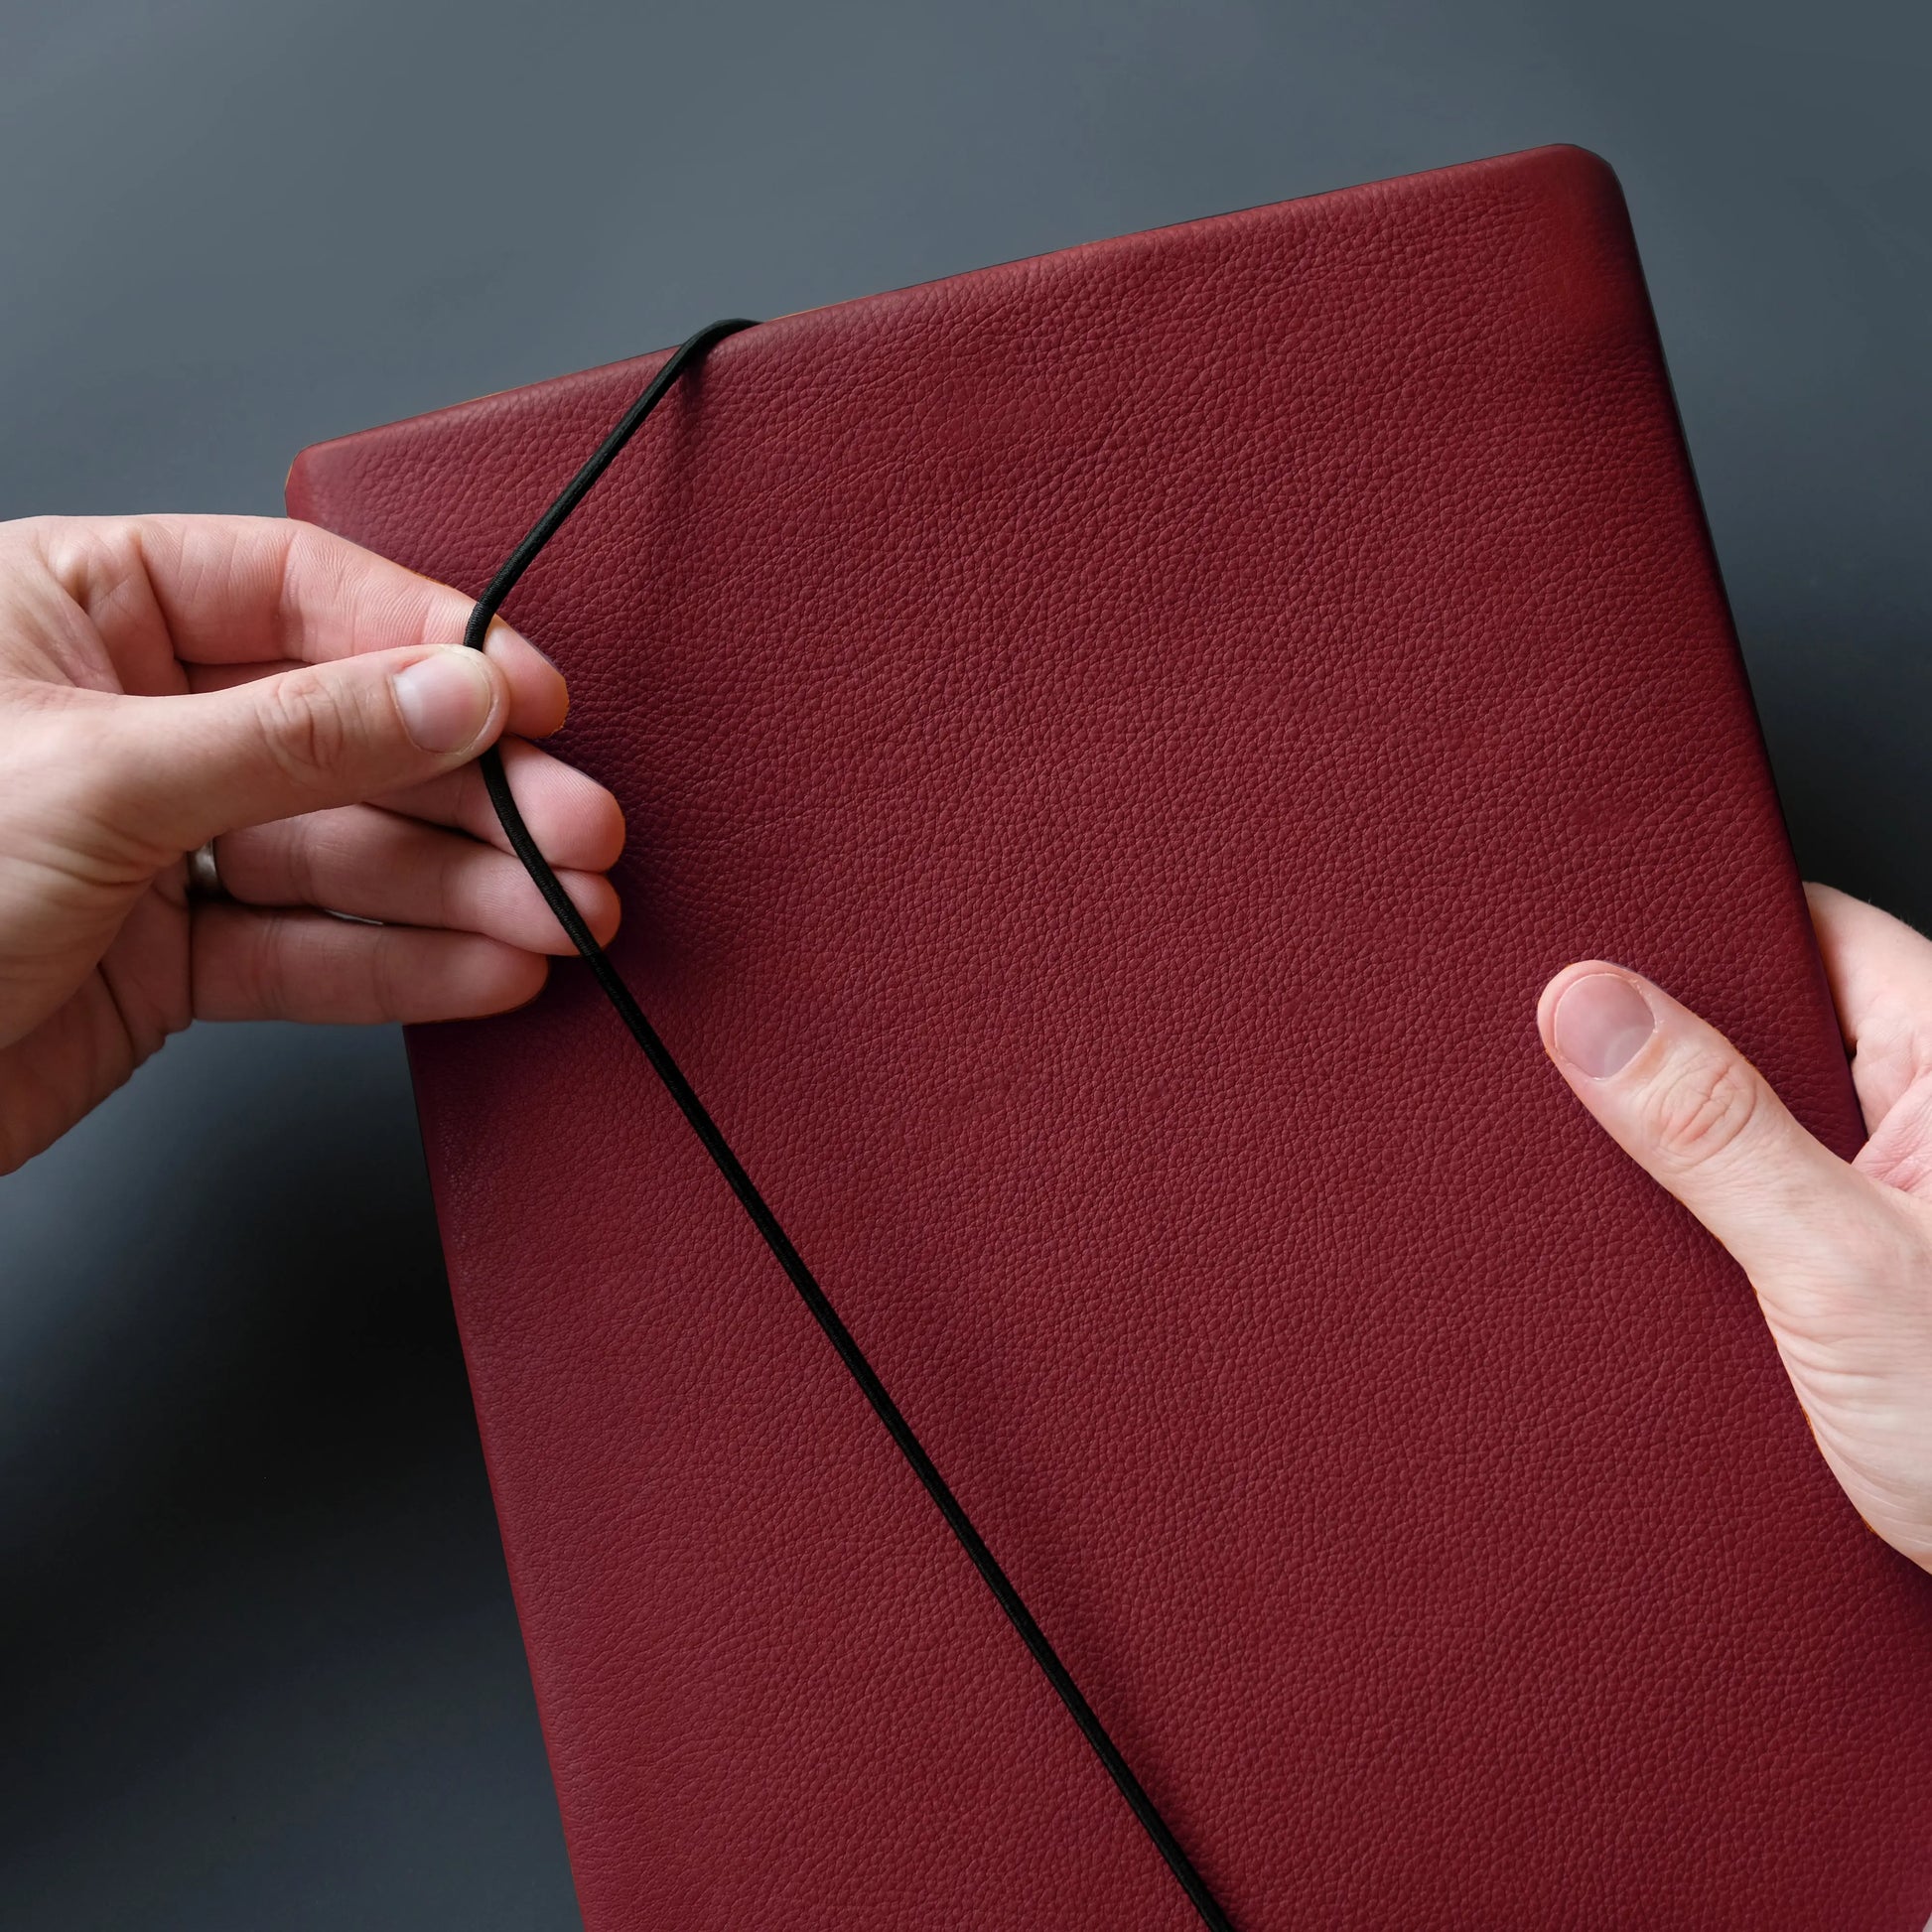 iPadhülle aus weinrotem Nappaleder, die von zwei Händen mit der Gummikordel verschlossen wird.